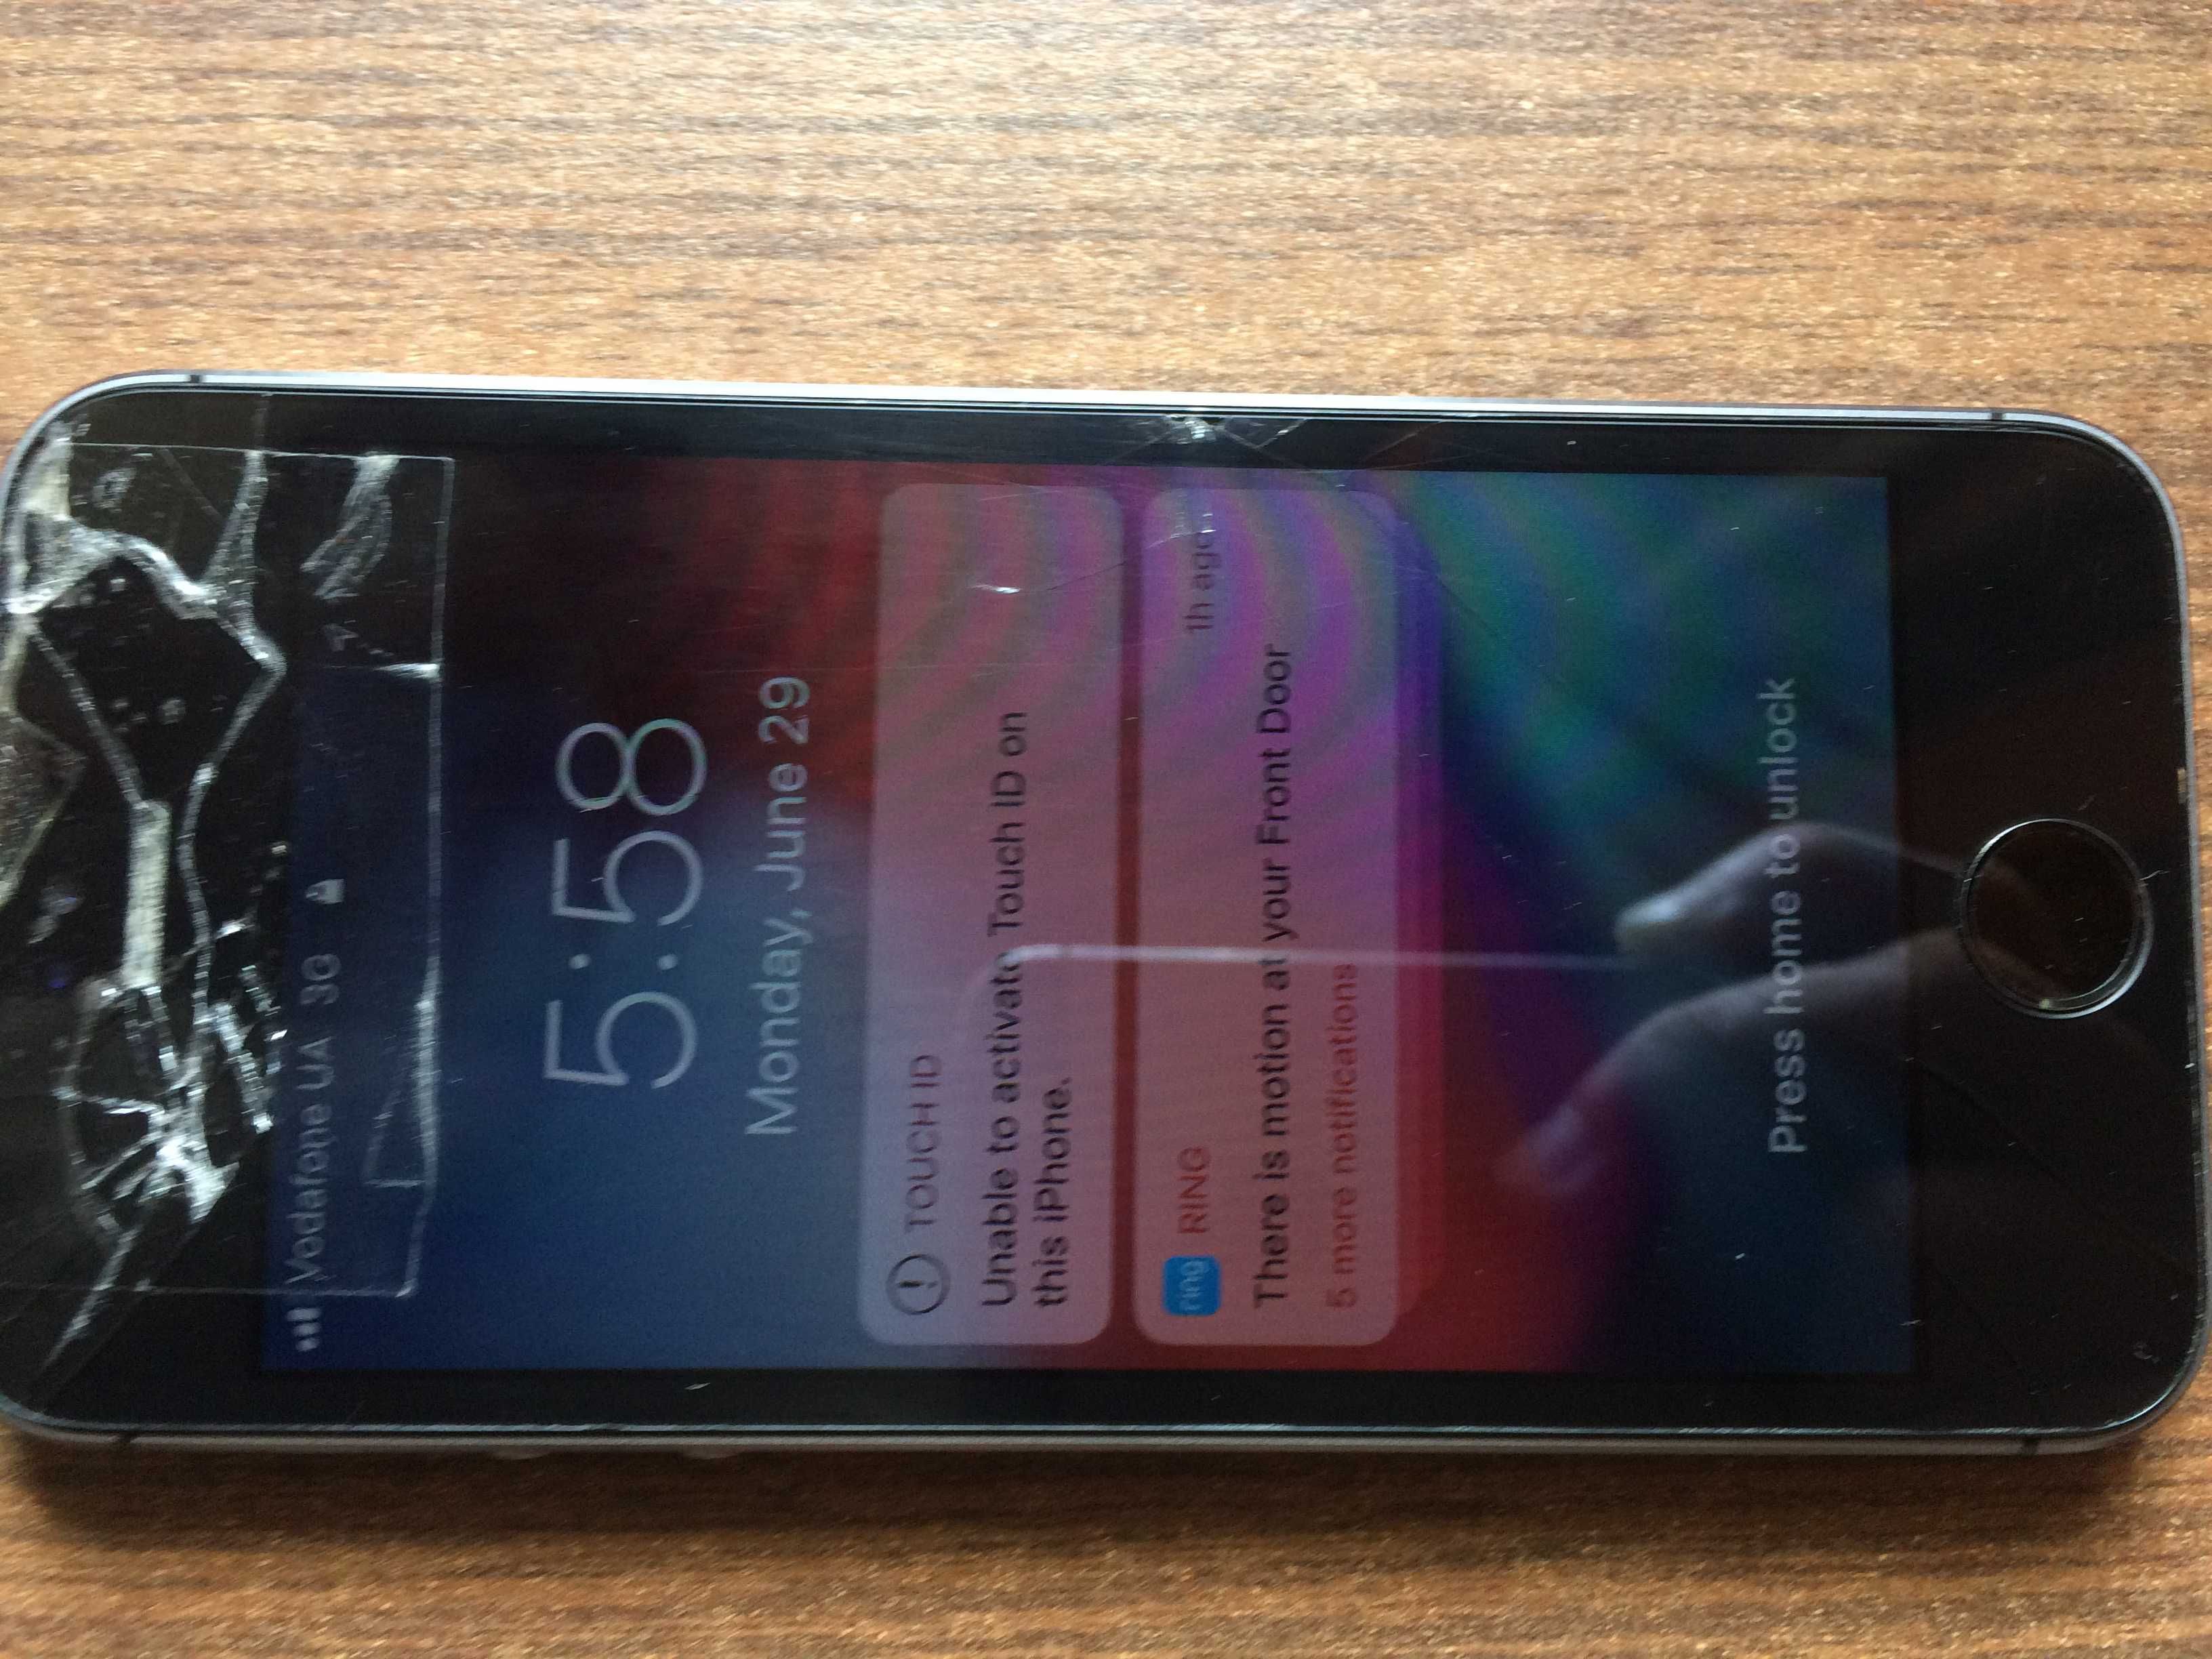 iPhone 5S neverlock 16GB на запчасти + вторая батарея или обмен